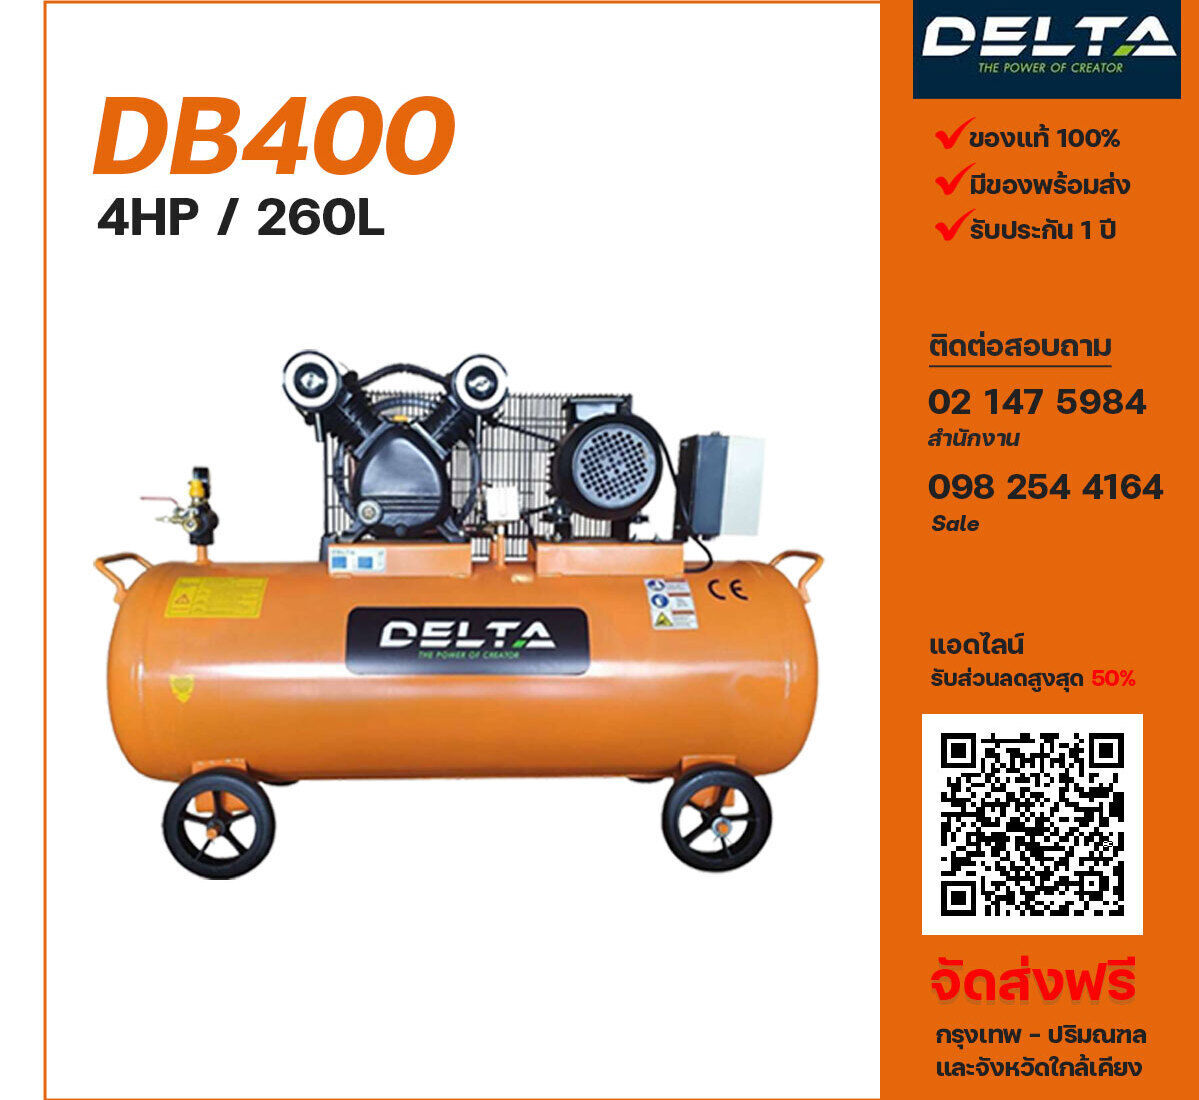 ปั๊มลมเดลต้า DELTA DB400 220V ปั๊มลมลูกสูบ ขนาด 2 สูบ 4 แรงม้า 260 ลิตร DELTA พร้อมมอเตอร์ ไฟ 220V ส่งฟรี กรุงเทพฯ-ปริมณฑล รับประกัน 1 ปี